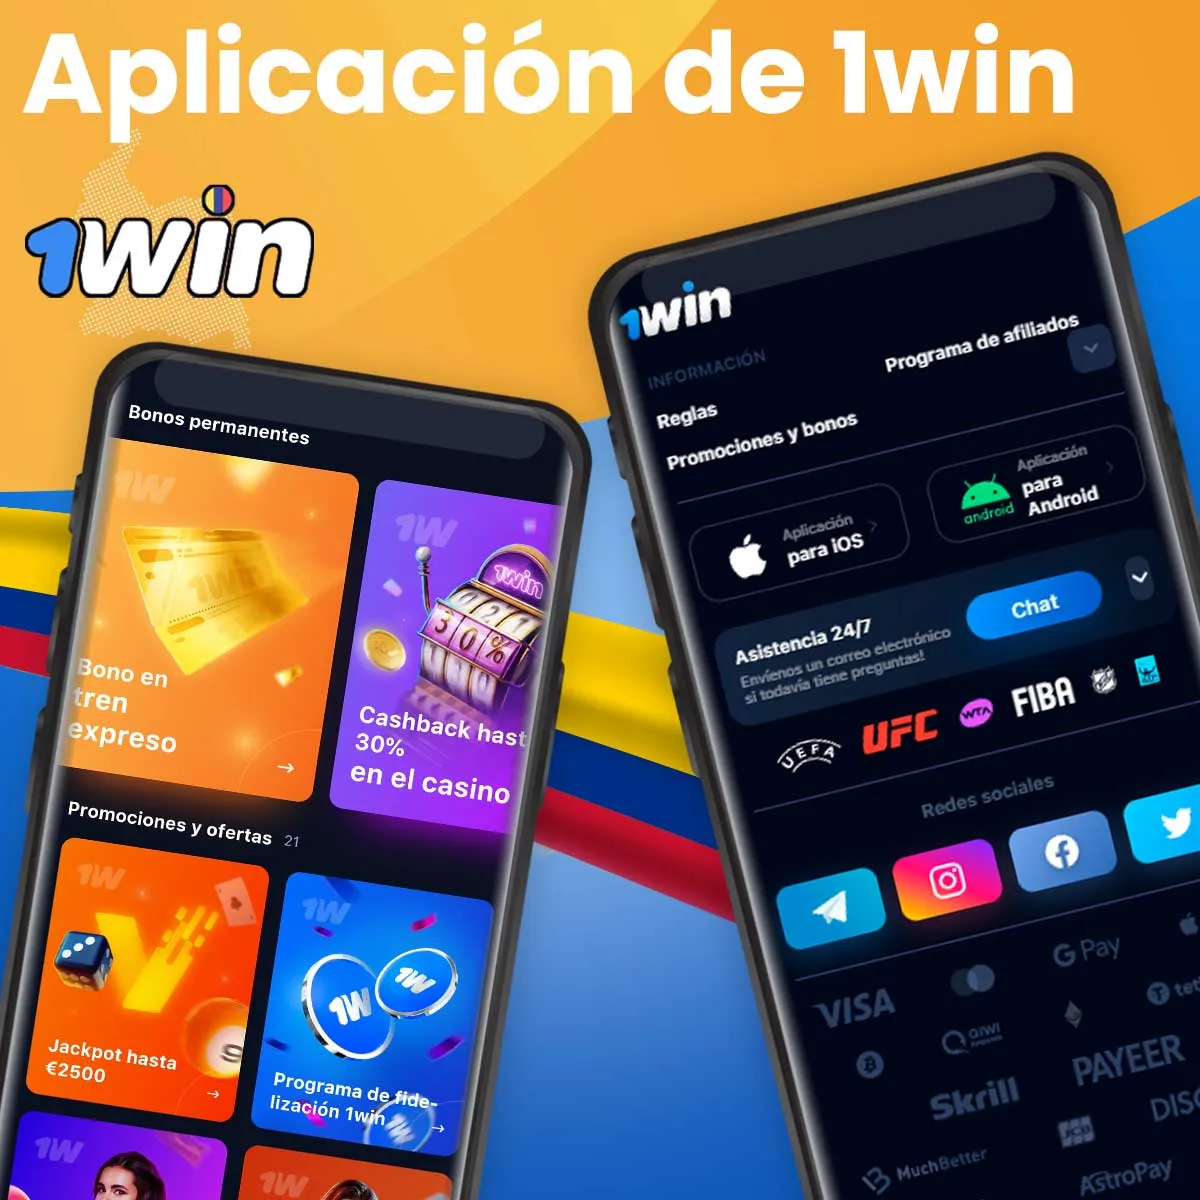 1win Mejor aplicación de apuestas en línea en Colombia